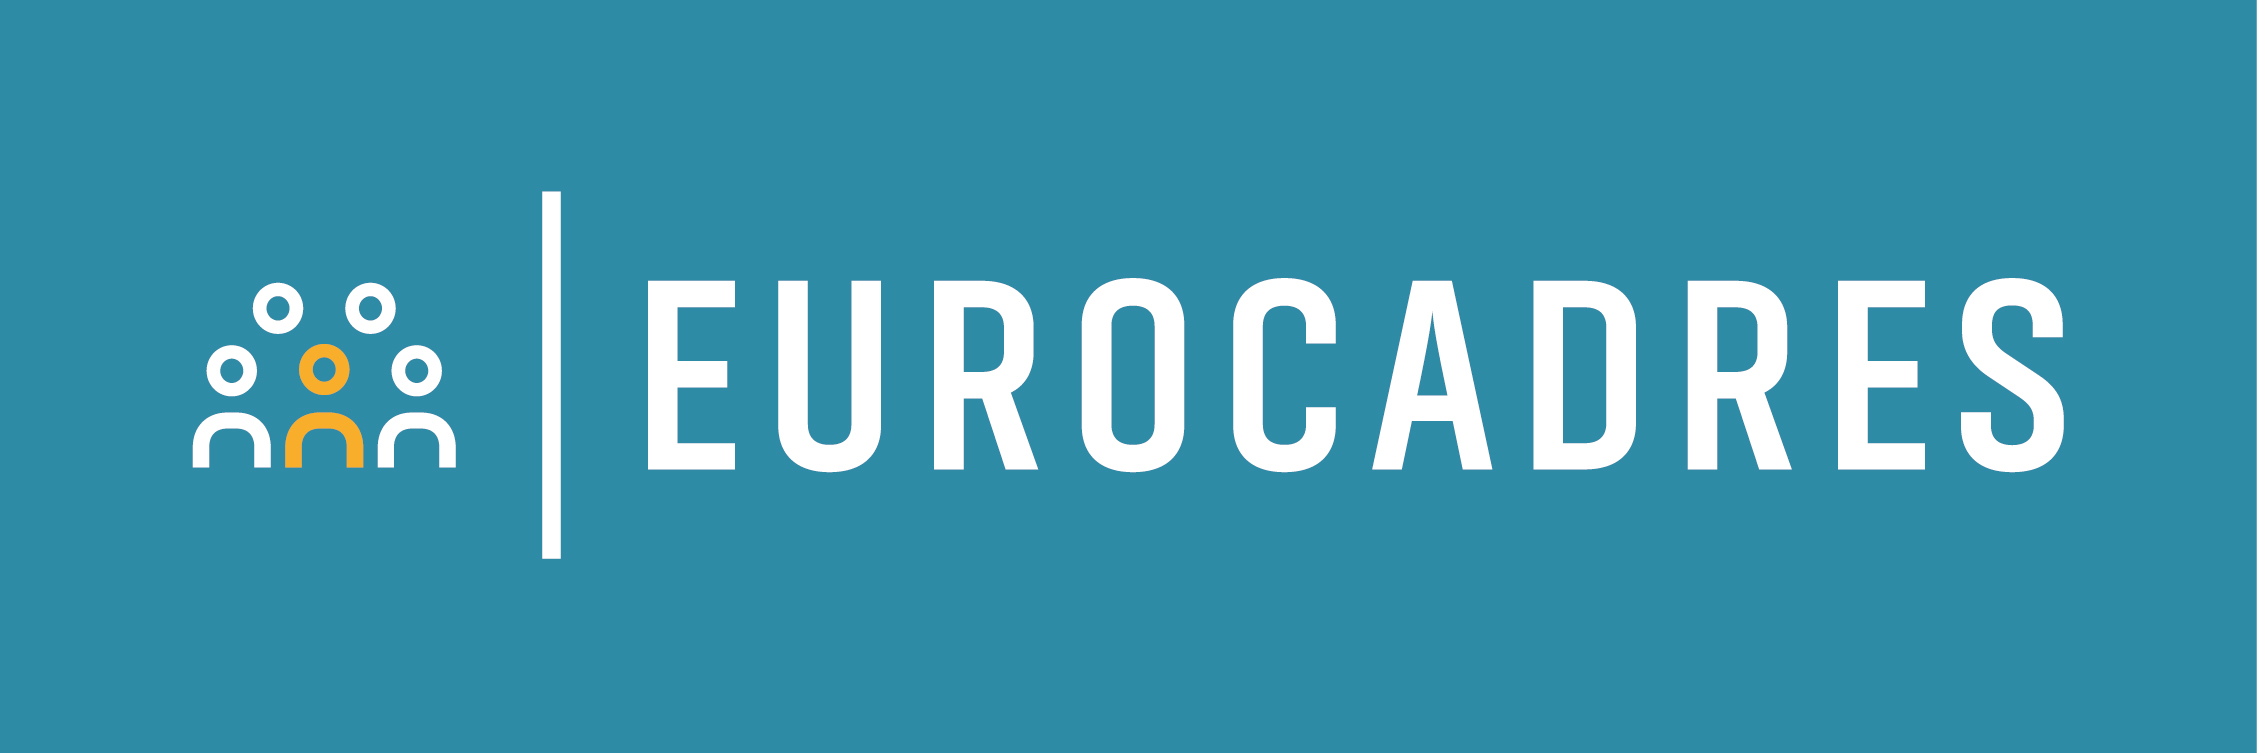 Logo_Eurocadres_white_blue bkg